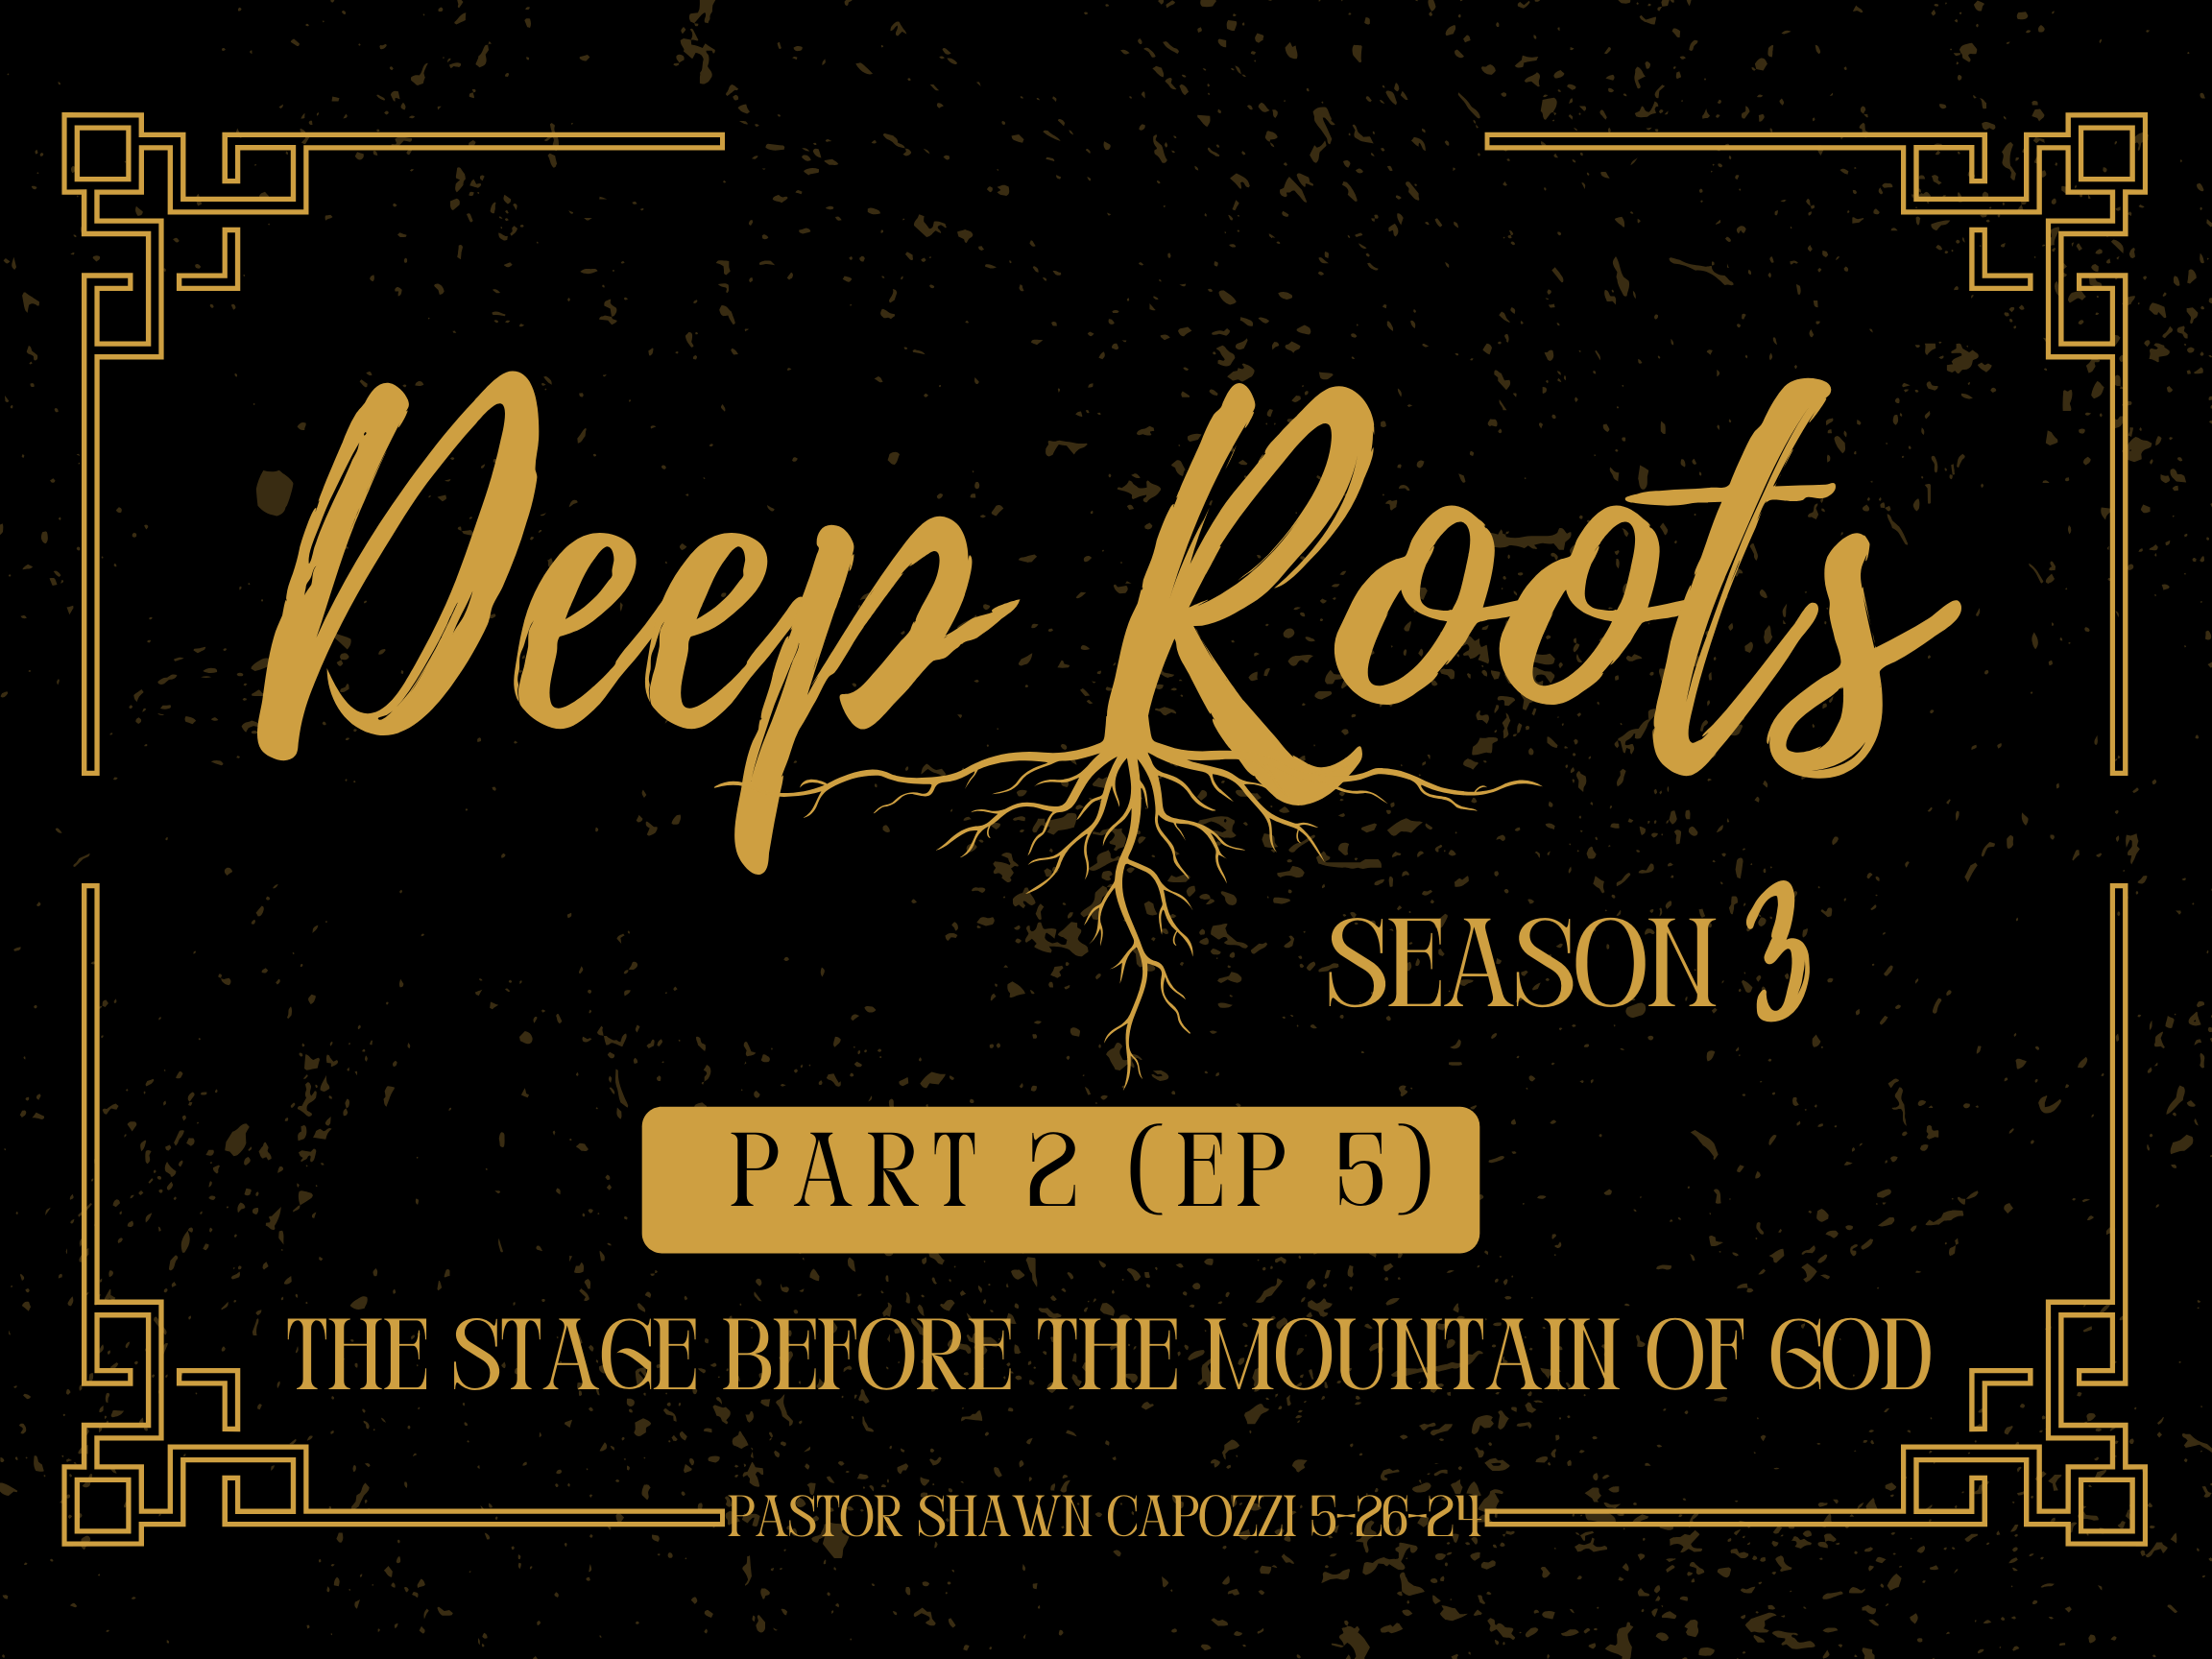 Deep Roots S3Pt.2E5